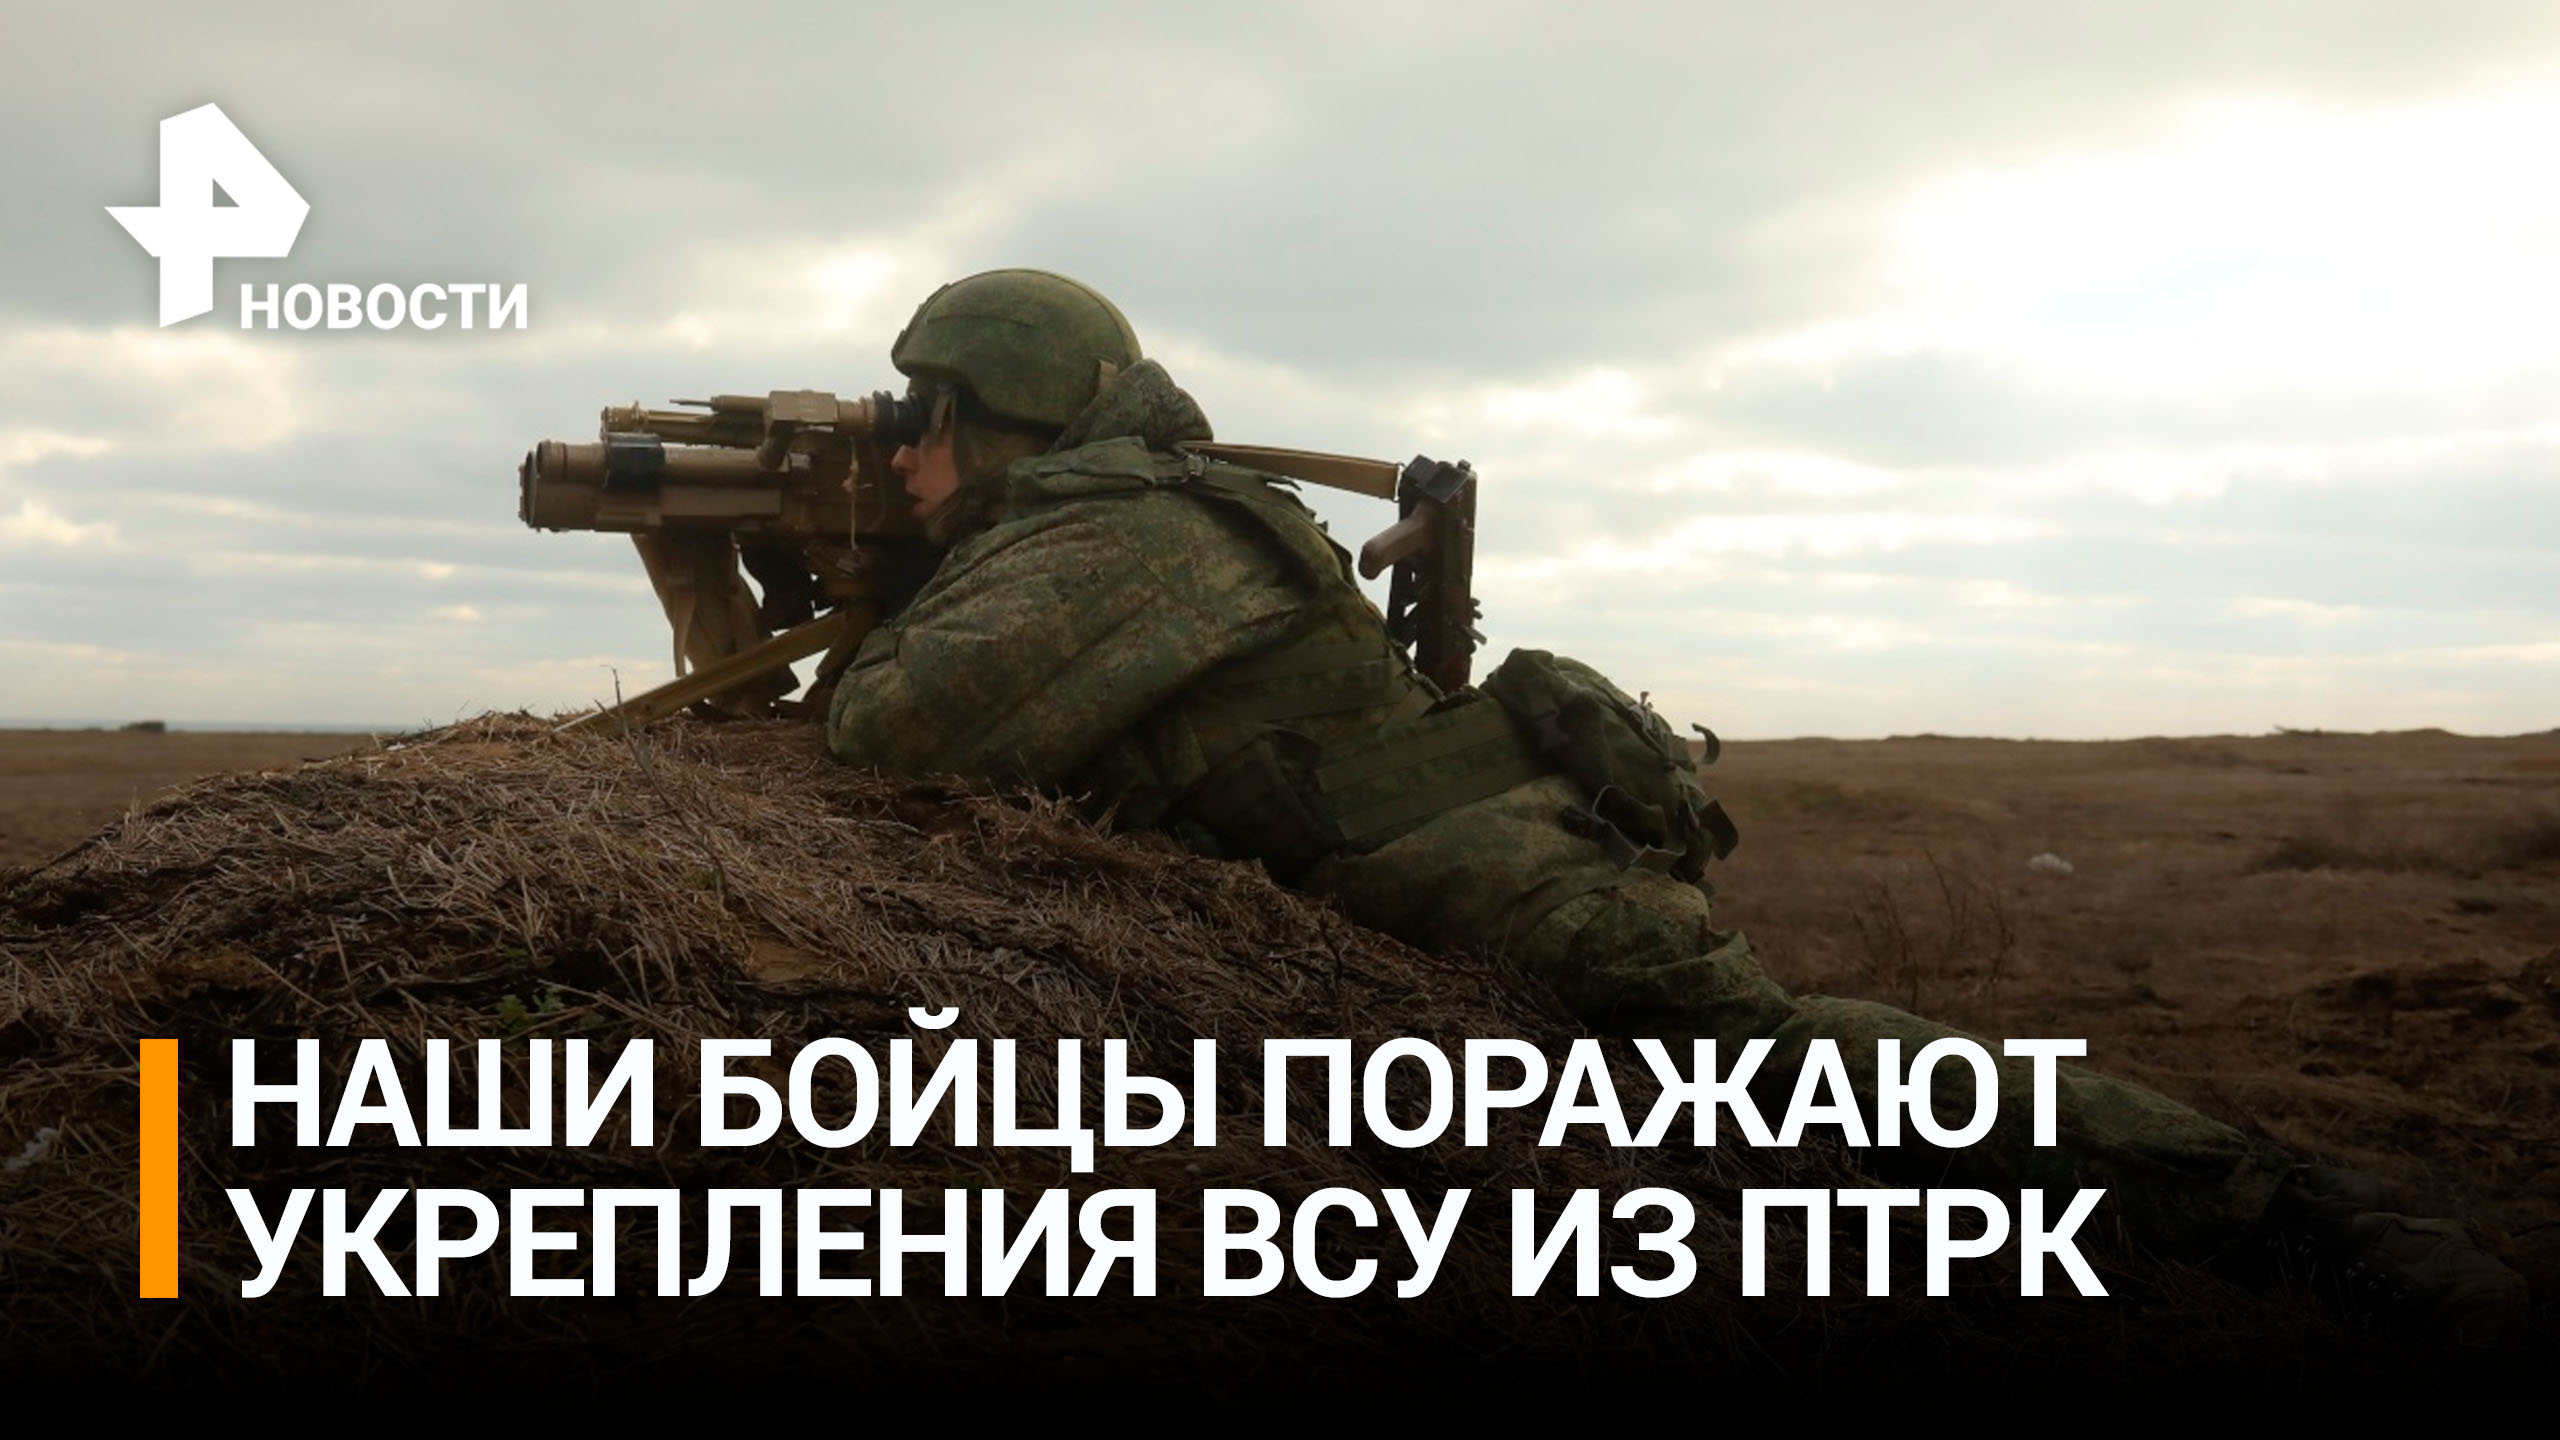 Российские военные ударами из ПТРК уничтожили опорные пункты ВСУ / РЕН Новости